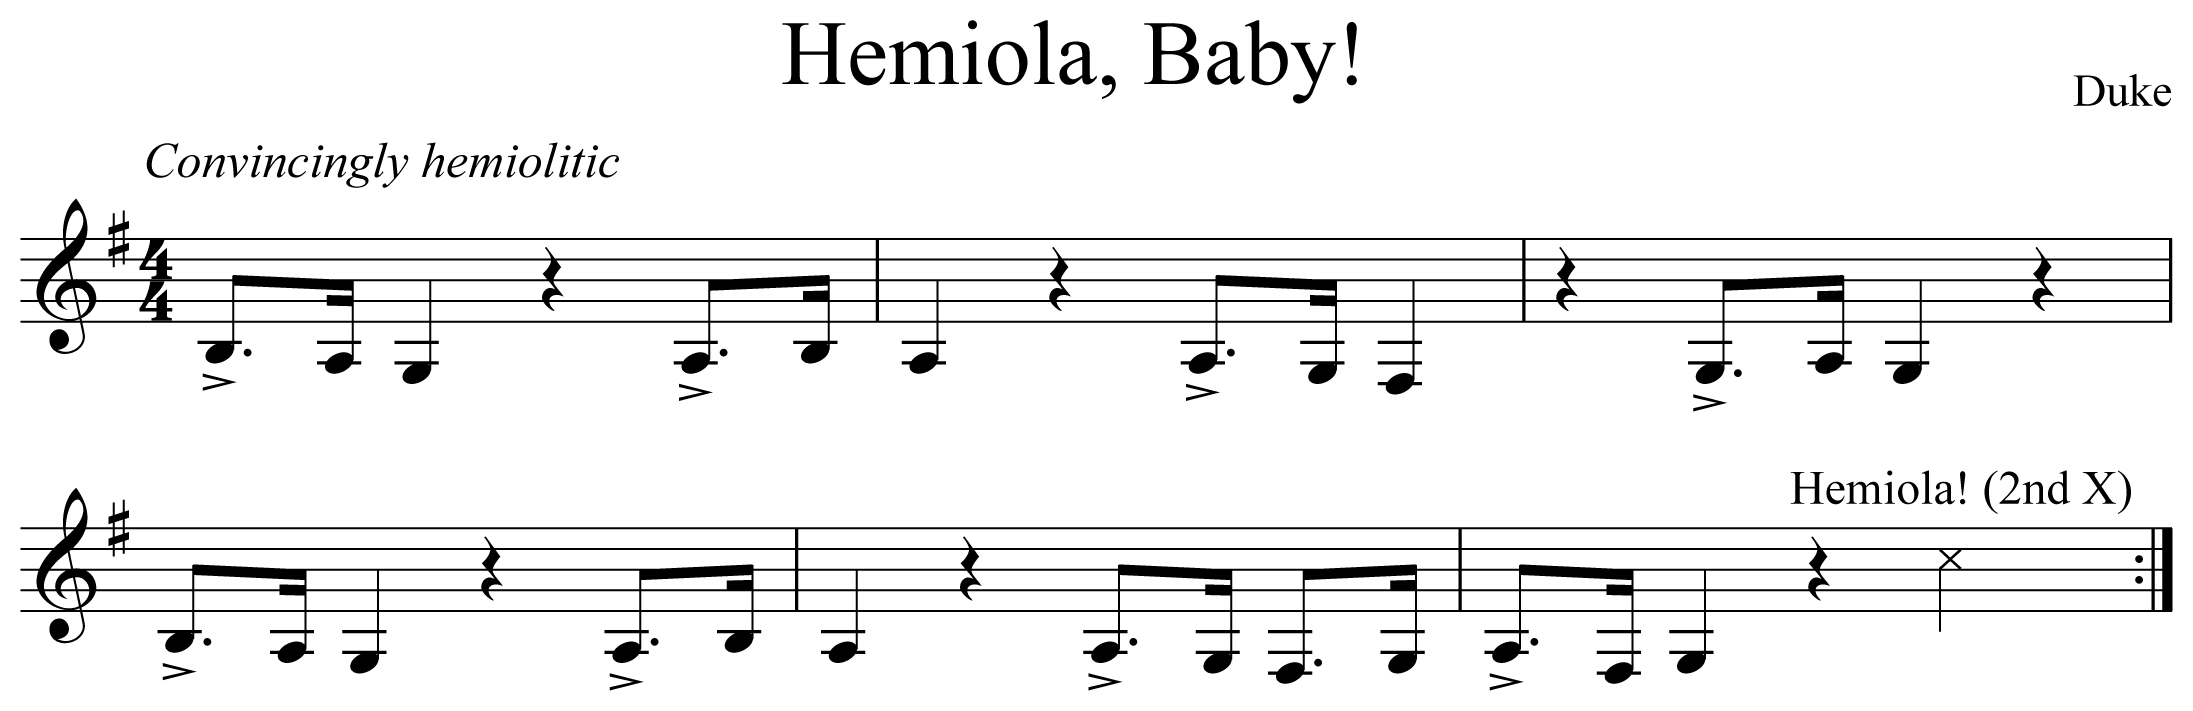 Hemiola, Baby! Notation Clarinet